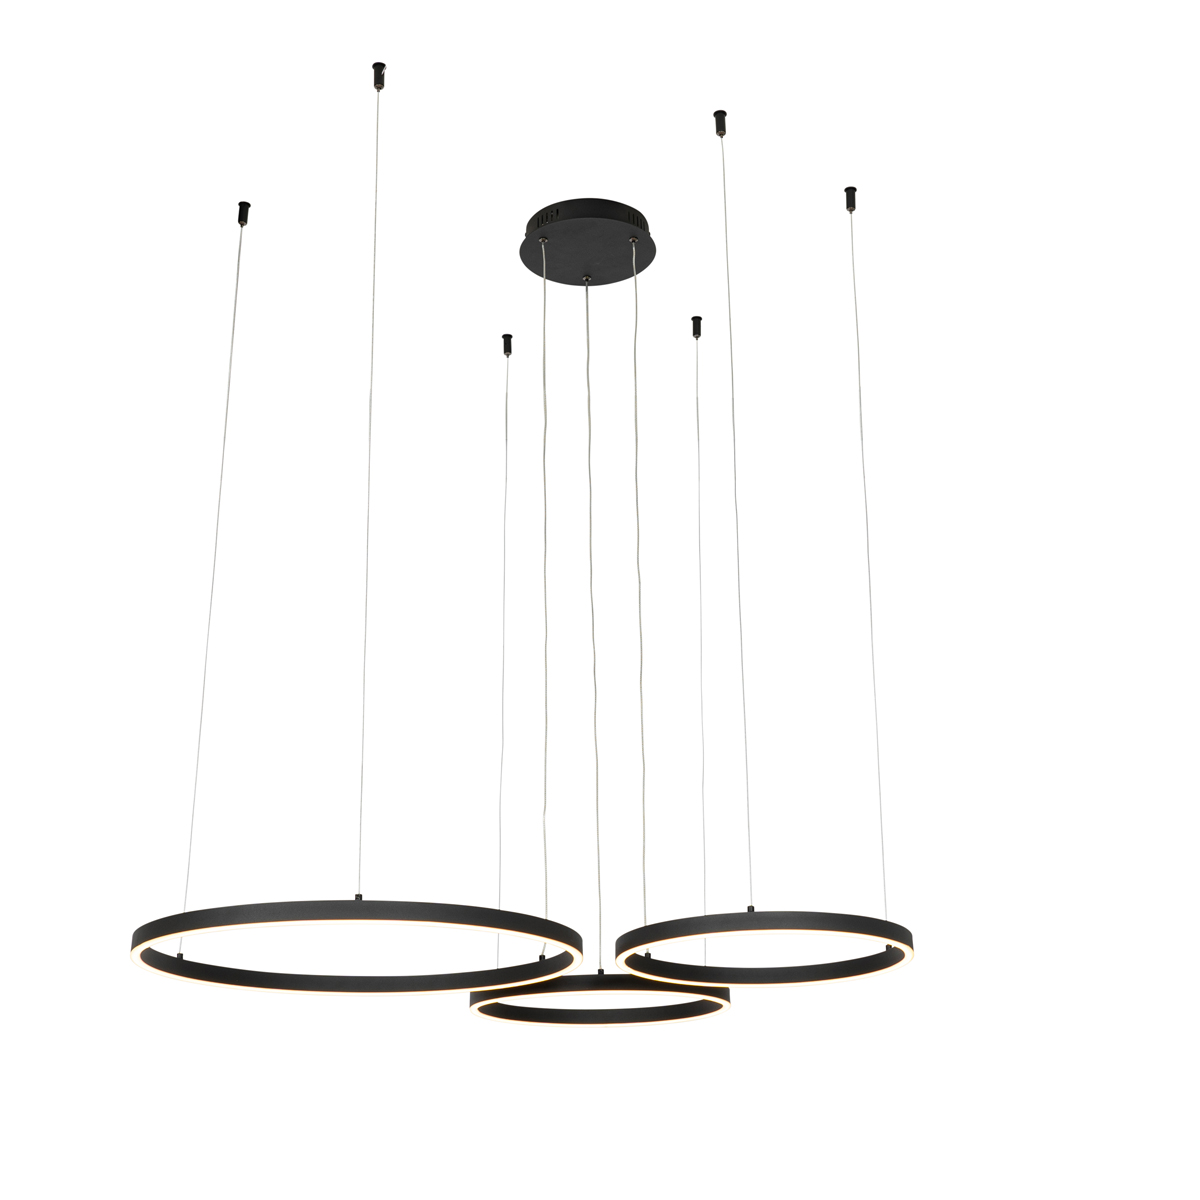 Függesztett lámpa fekete 3 fokozatban szabályozható 3 lámpával - Anello